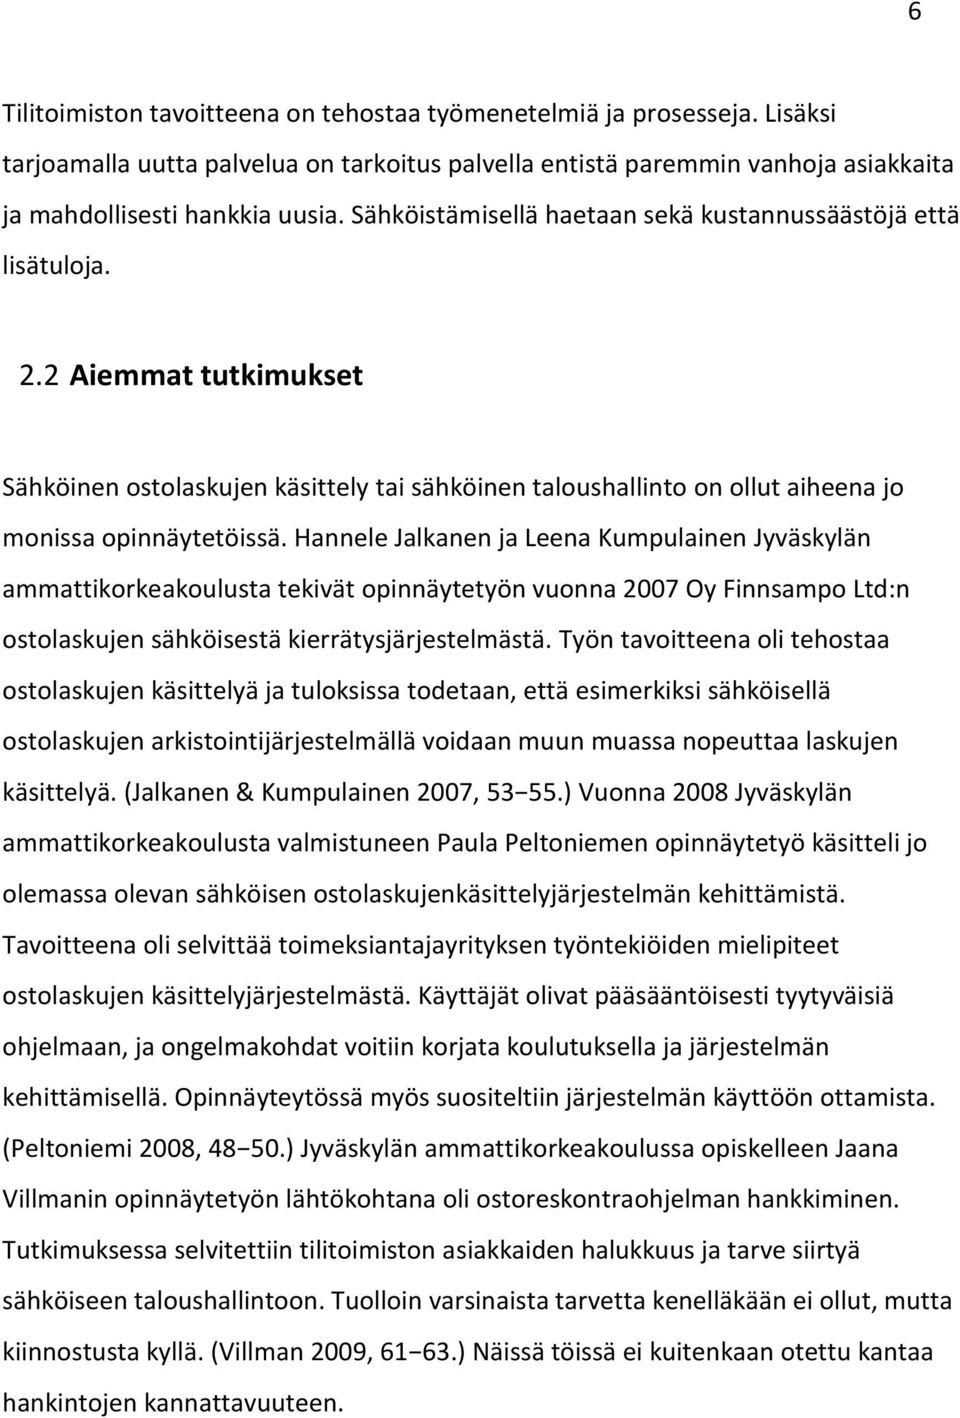 Hannele Jalkanen ja Leena Kumpulainen Jyväskylän ammattikorkeakoulusta tekivät opinnäytetyön vuonna 2007 Oy Finnsampo Ltd:n ostolaskujen sähköisestä kierrätysjärjestelmästä.